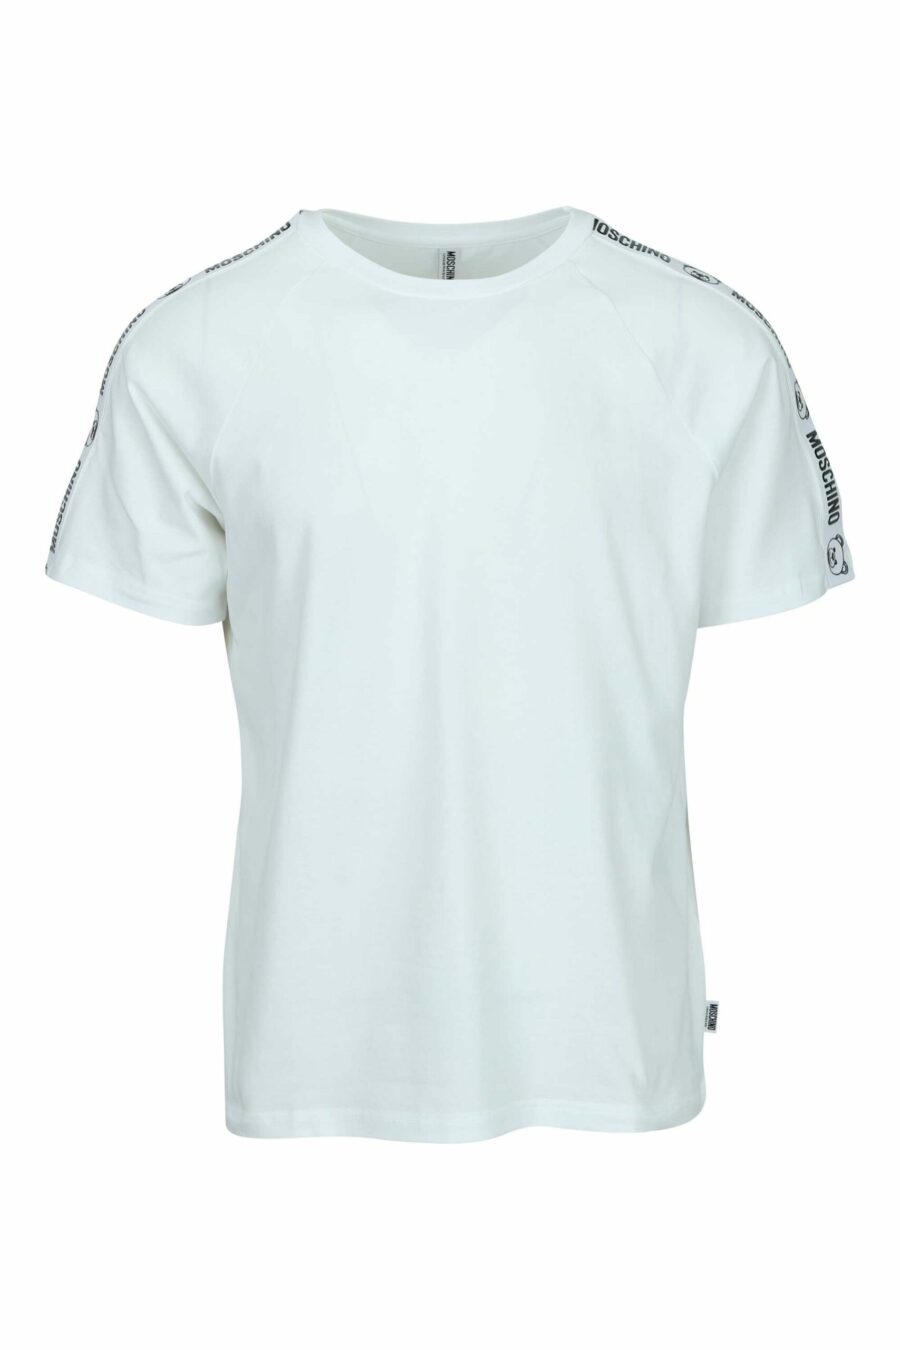 Camiseta blanca con logo oso "underbear" en cinta hombros - 667113602462 scaled